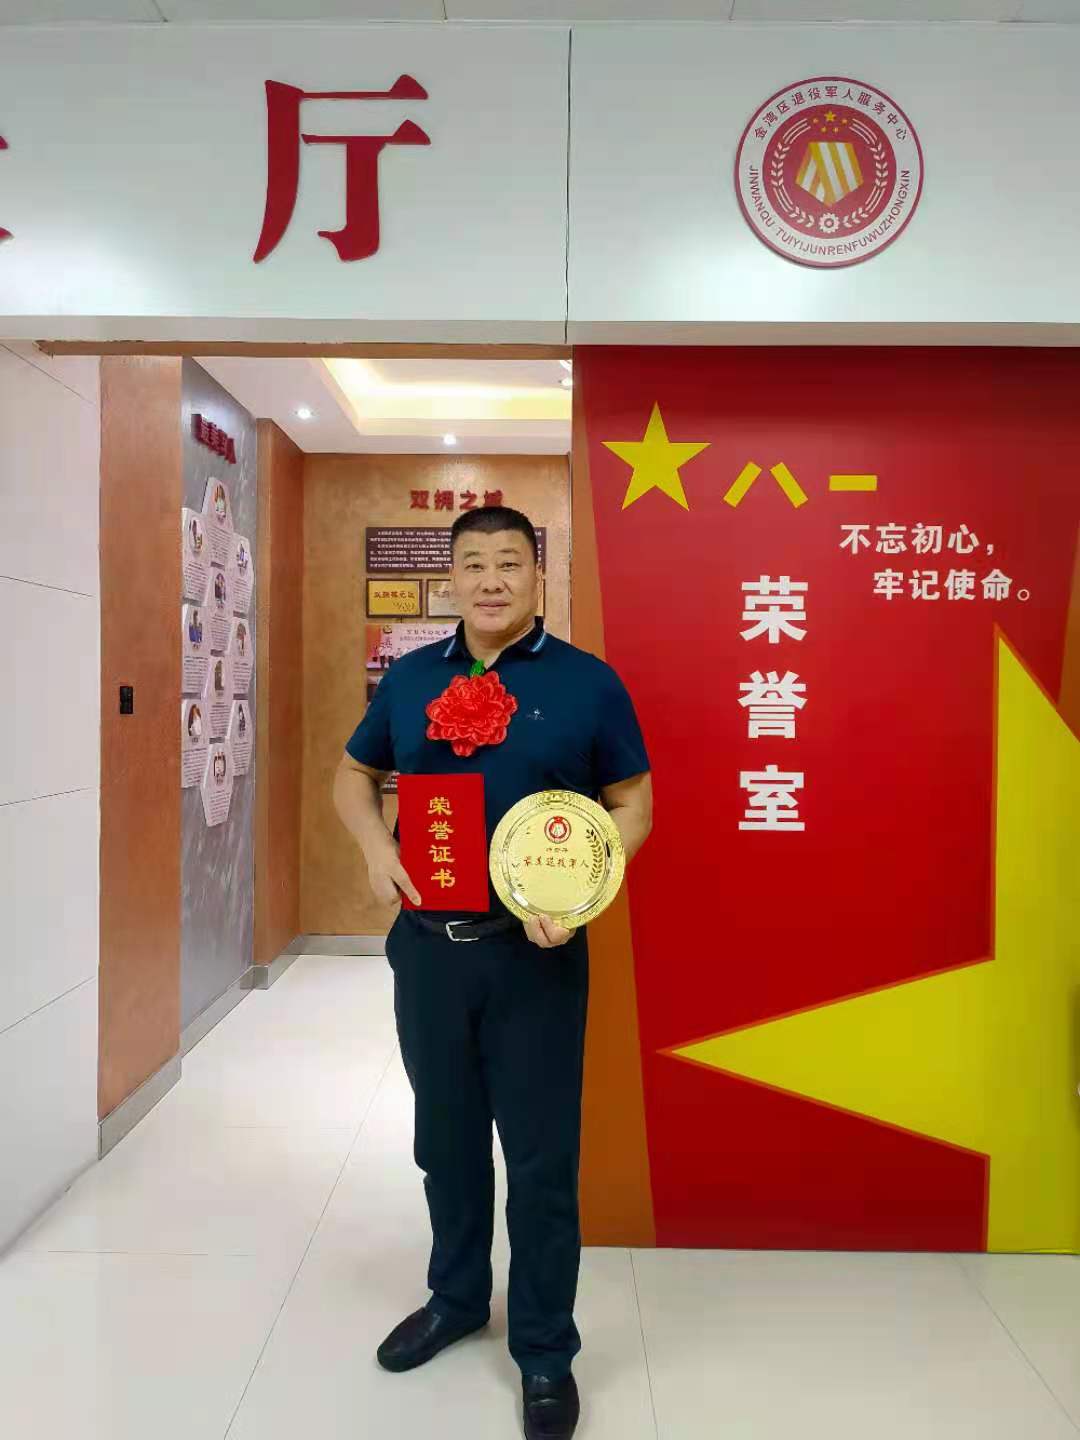 【点赞】我司董事长钟贵平荣获2020“珠海市金湾区最美退役军人” 称号